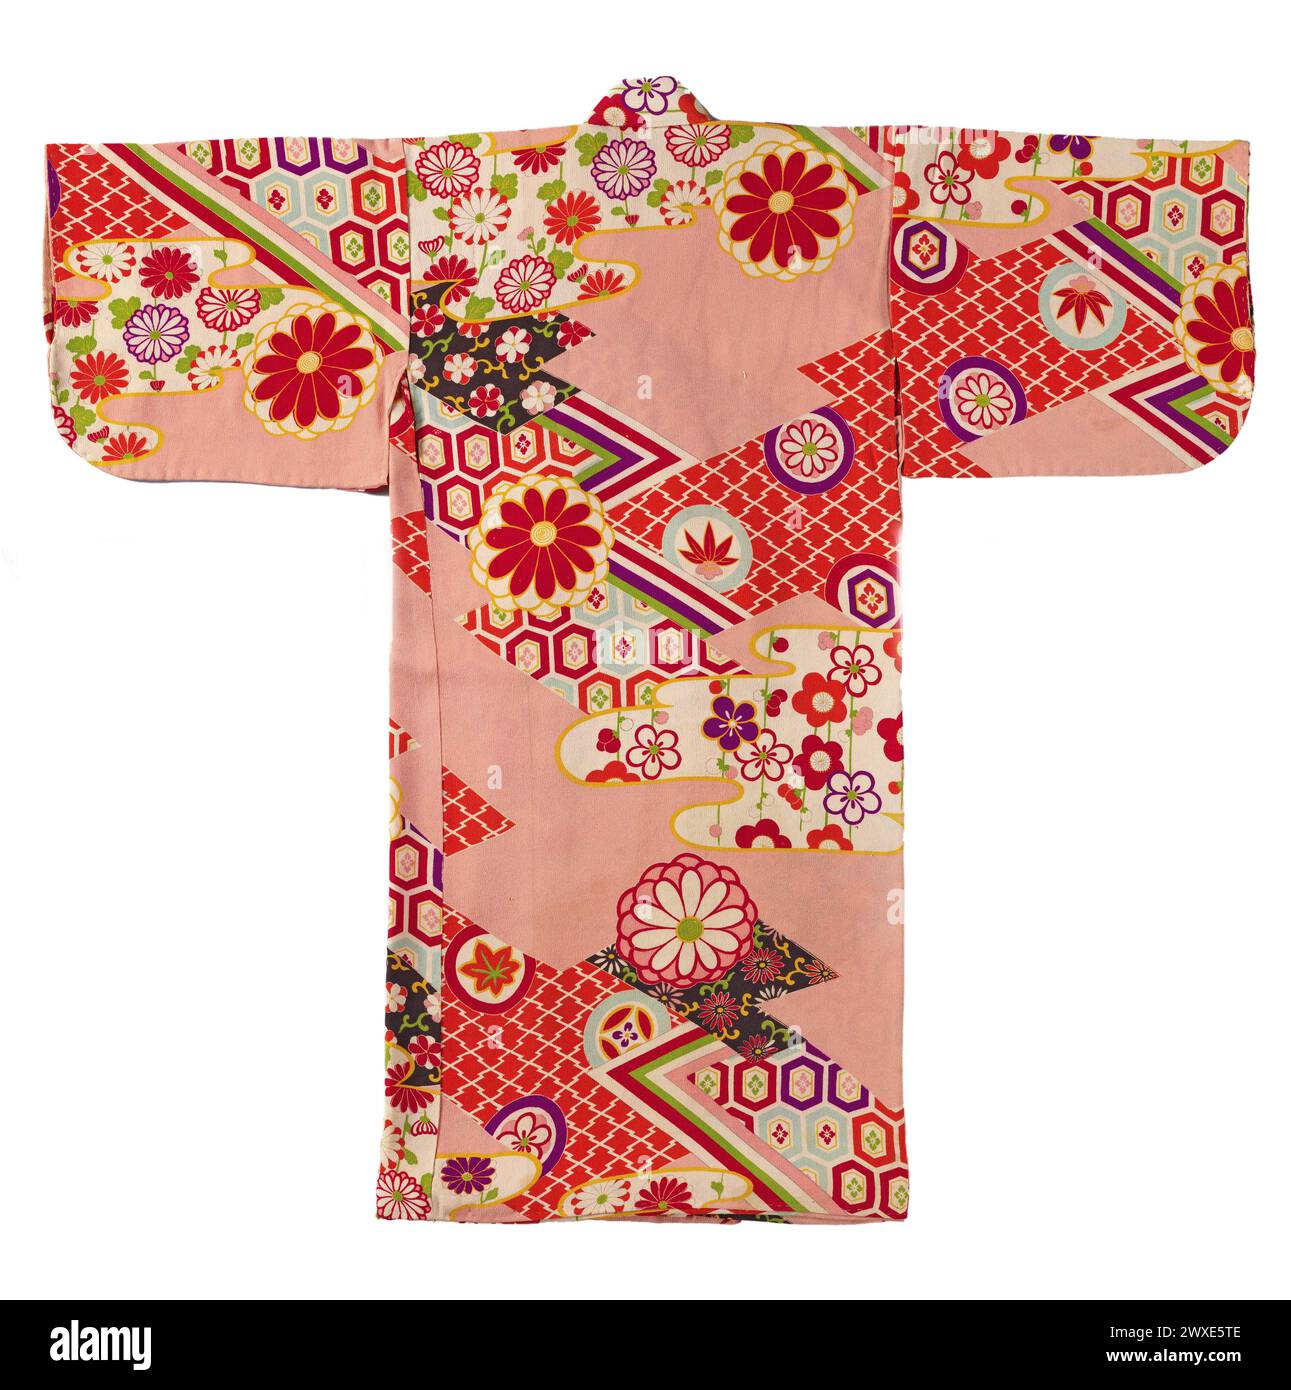 Detailschnitt eines japanischen Mädchens miyamairi Kimono mit geometrischer und floraler Ikonographie, formaler Kimono für ein Mädchen für den ersten Besuch eines Shinto-Schreins. Rosa Kreppseide (Chirimen) Hintergrund mit einer schablonierten yuzen Dekoration. Japan, 1920 - 1940, Seide. Stockfoto